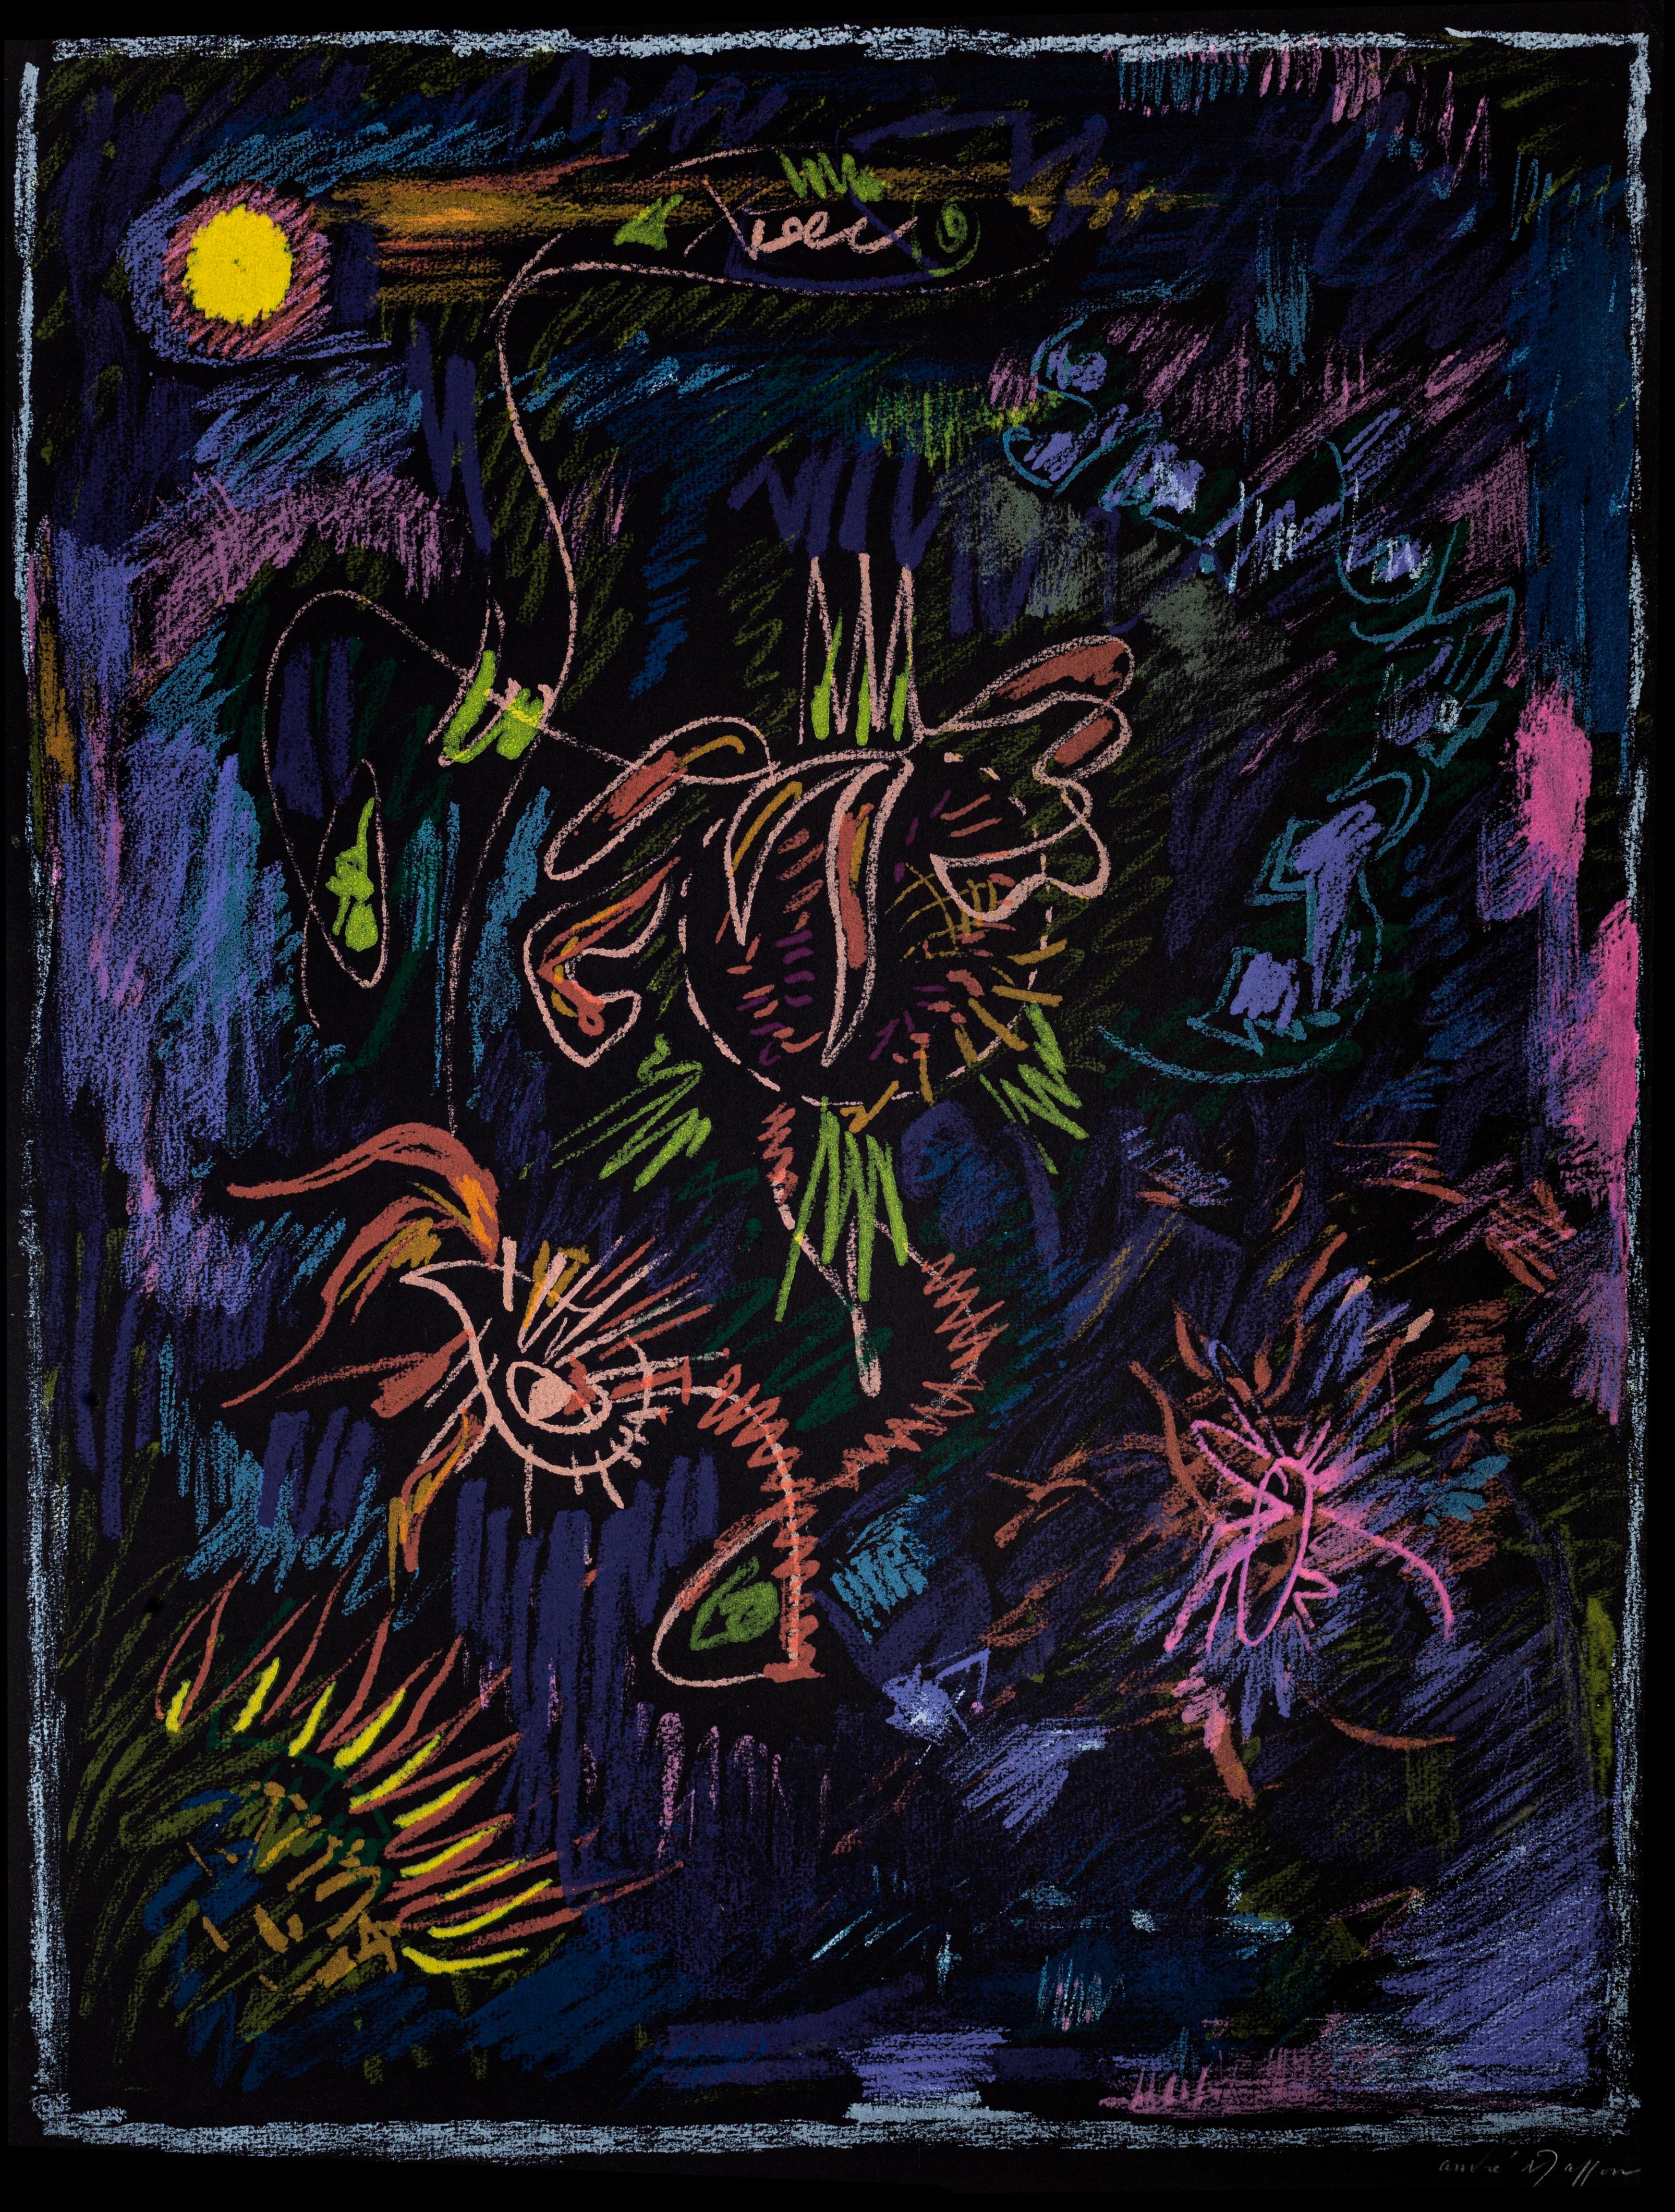 Abstrakte Komposition ist eine originale Farblithographie, die in der Hälfte des XX. Jahrhunderts von Andre Masson realisiert wurde.

Handsigniert am unteren rechten Rand.

Links unten nummeriert. Ausgabe 17/25.

Das Kunstwerk stellt eines der